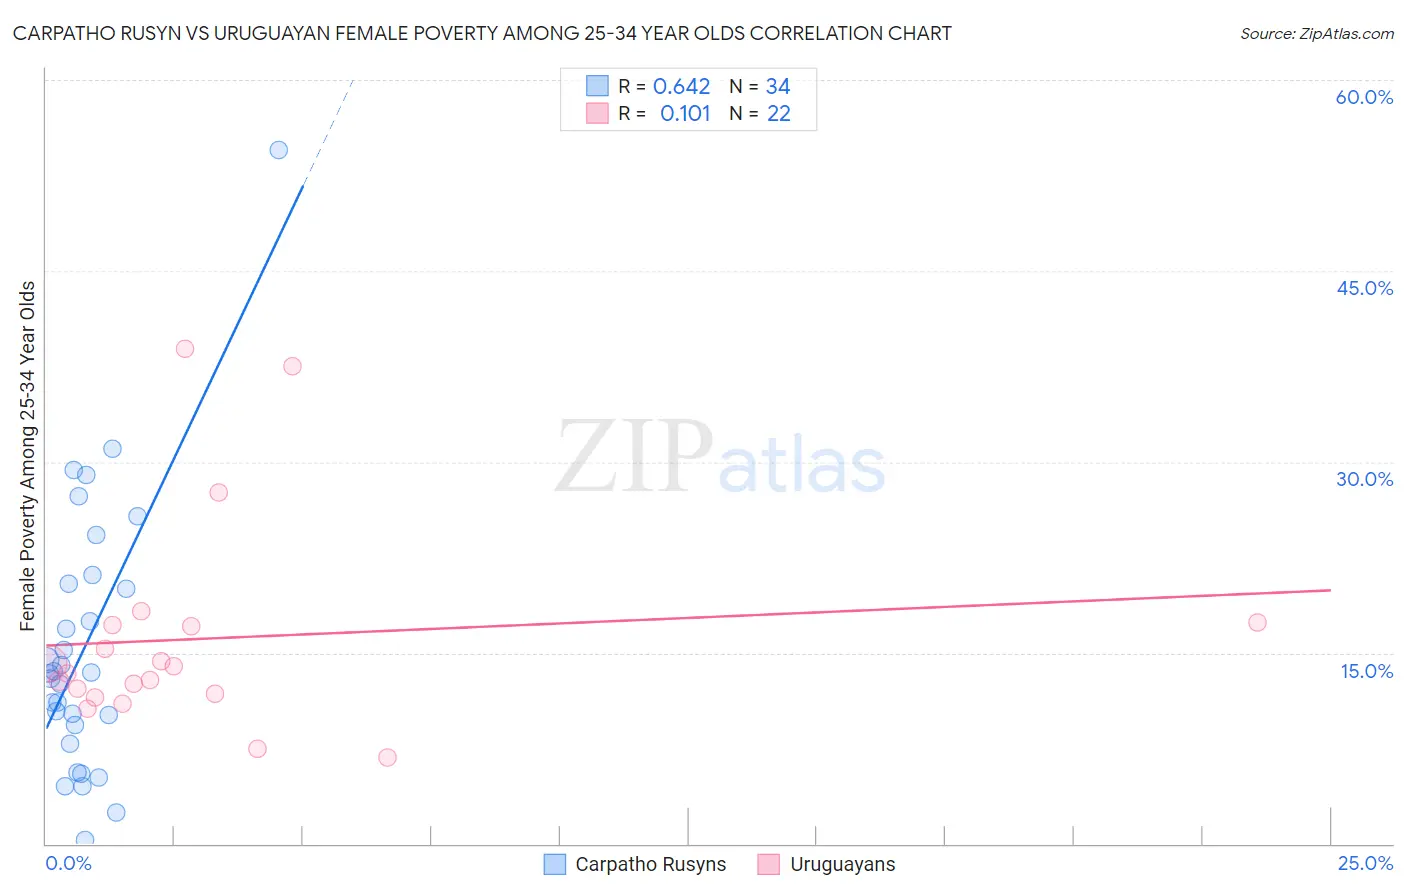 Carpatho Rusyn vs Uruguayan Female Poverty Among 25-34 Year Olds